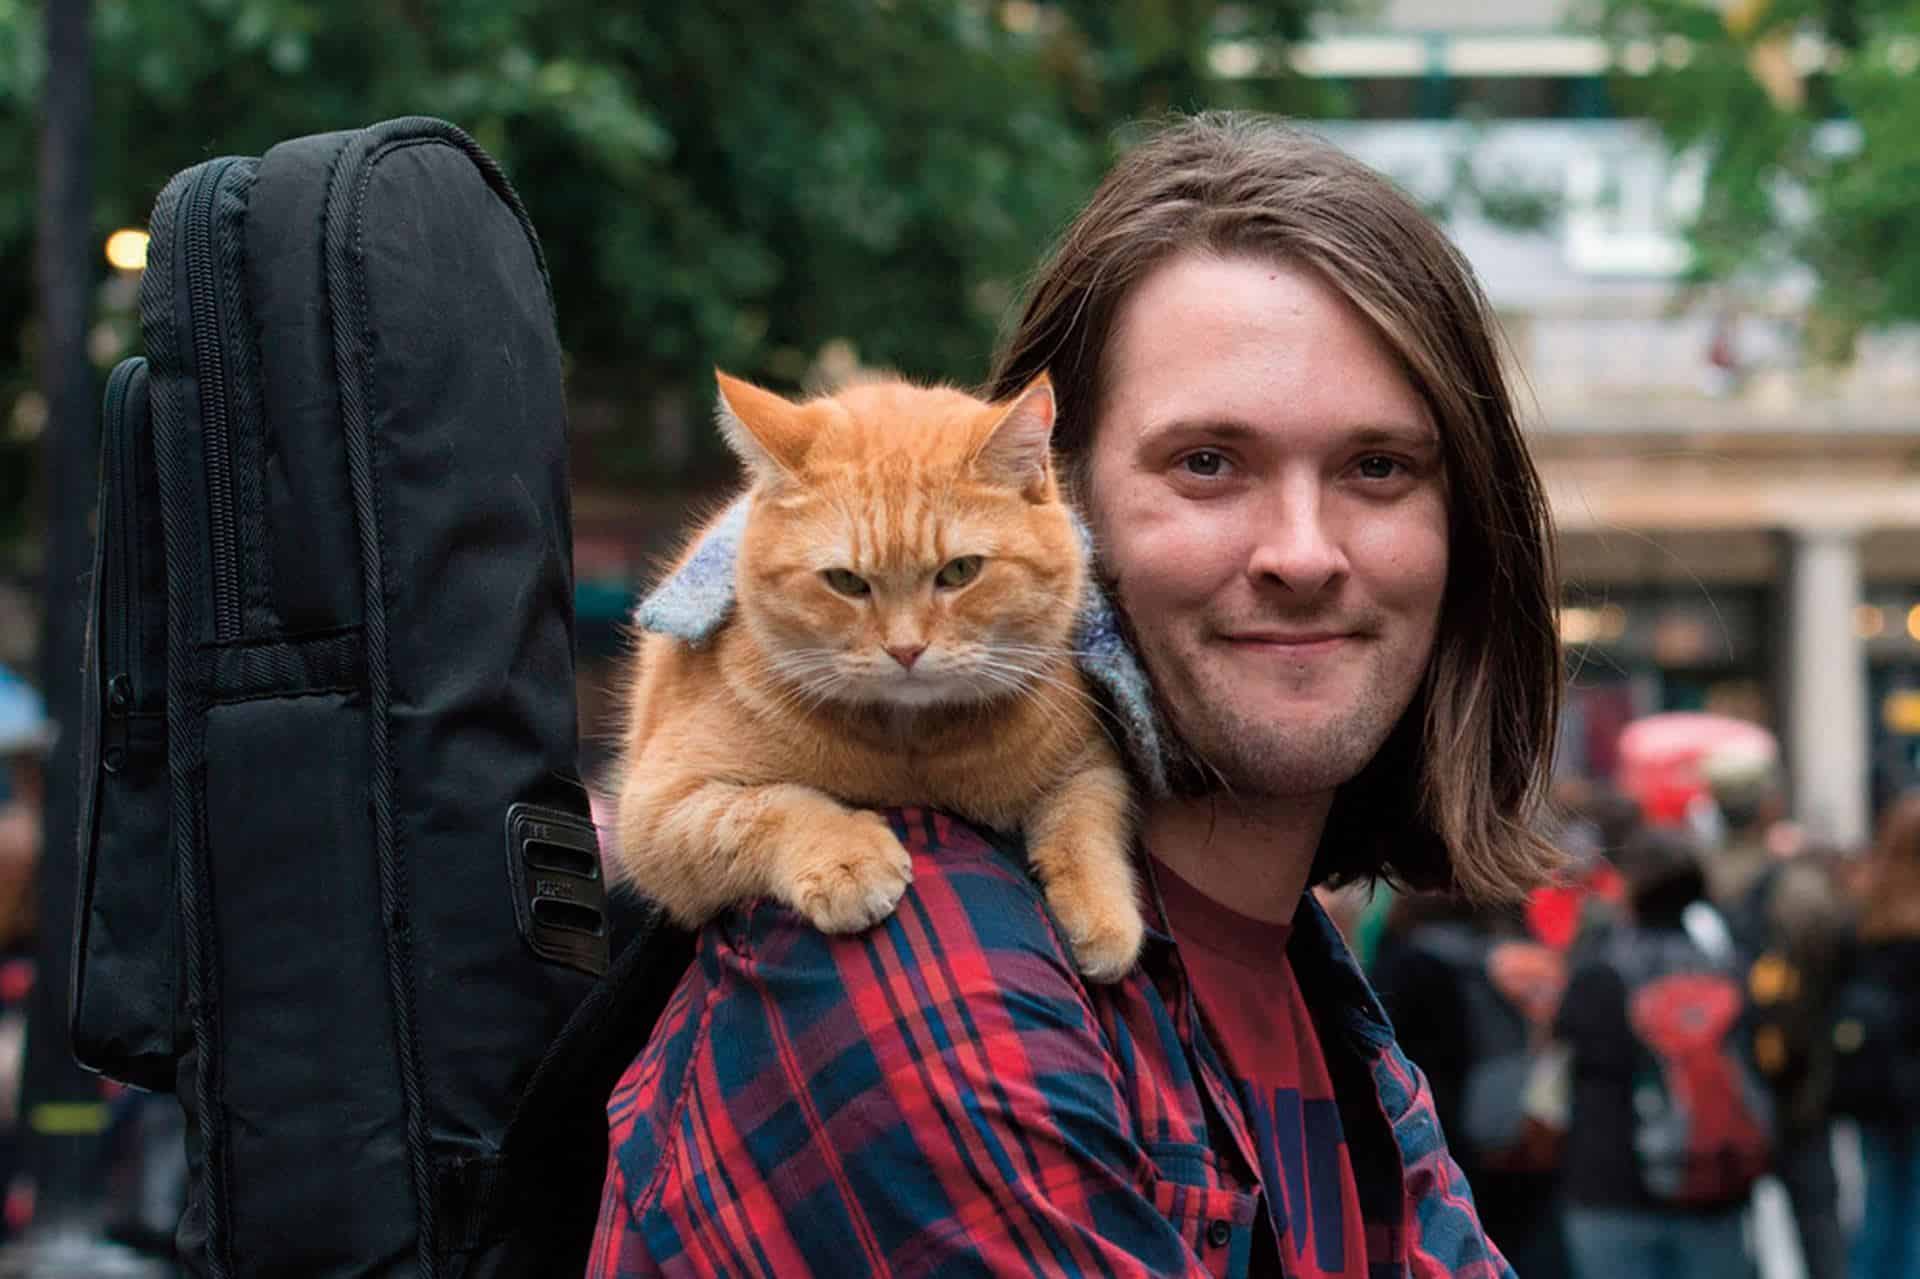 A Street Cat Named Bob 2 lands its director